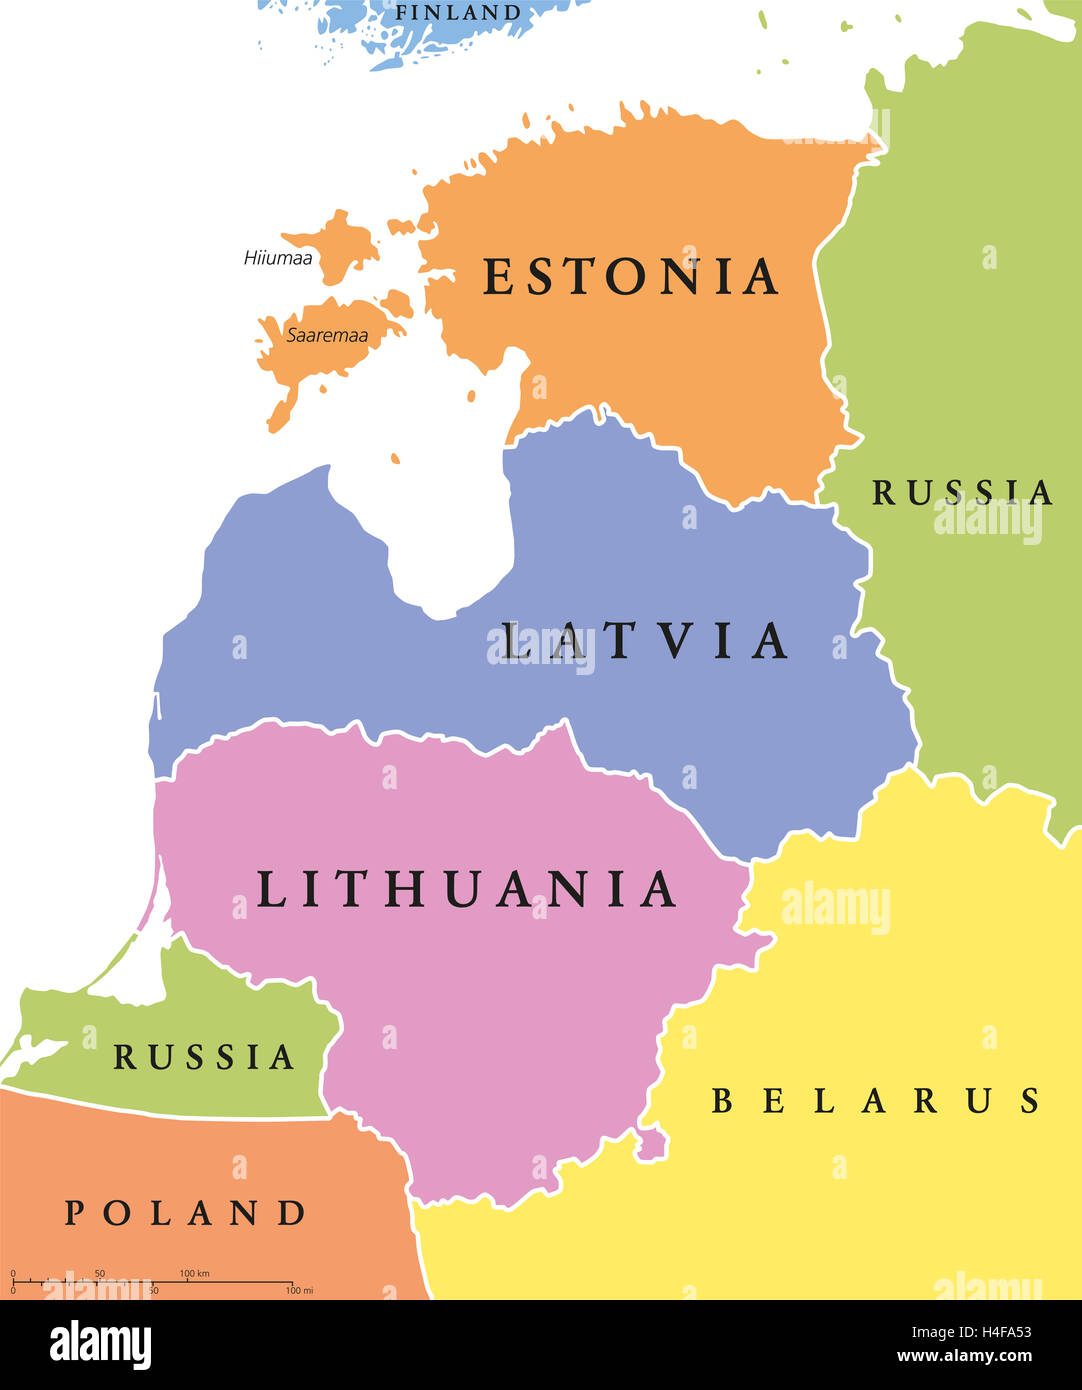 Baltischen Staaten Politische Karte Auch Bekannt Als Baltikum Baltischen Staaten Oder Staaten Estland Lettland Und Litauen Mit Grenzen Stockfotografie Alamy